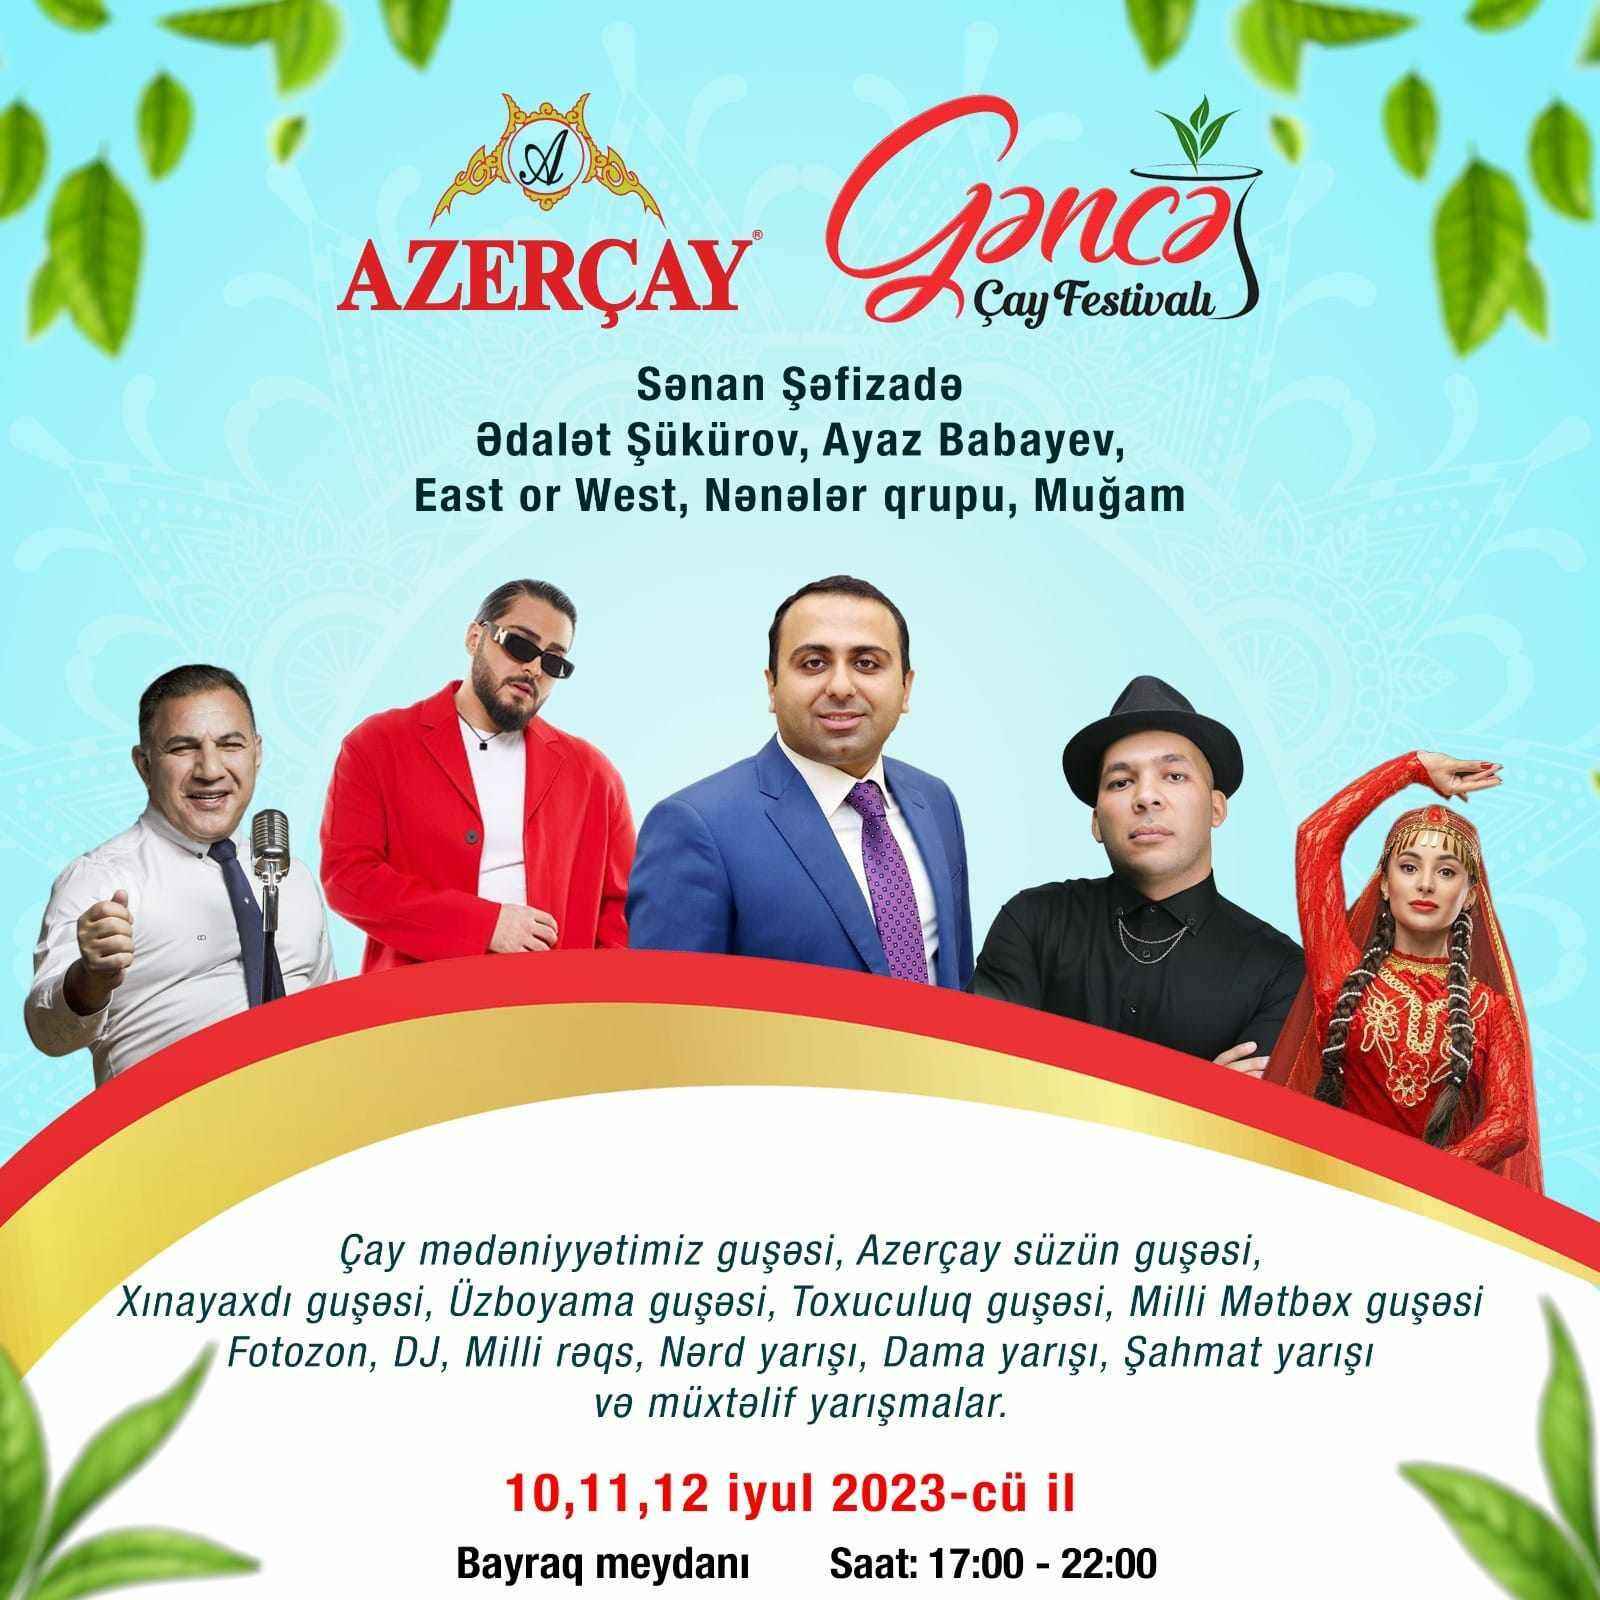 Gəncədə “Azerçay” ilə Çay Festivalı keçiriləcək